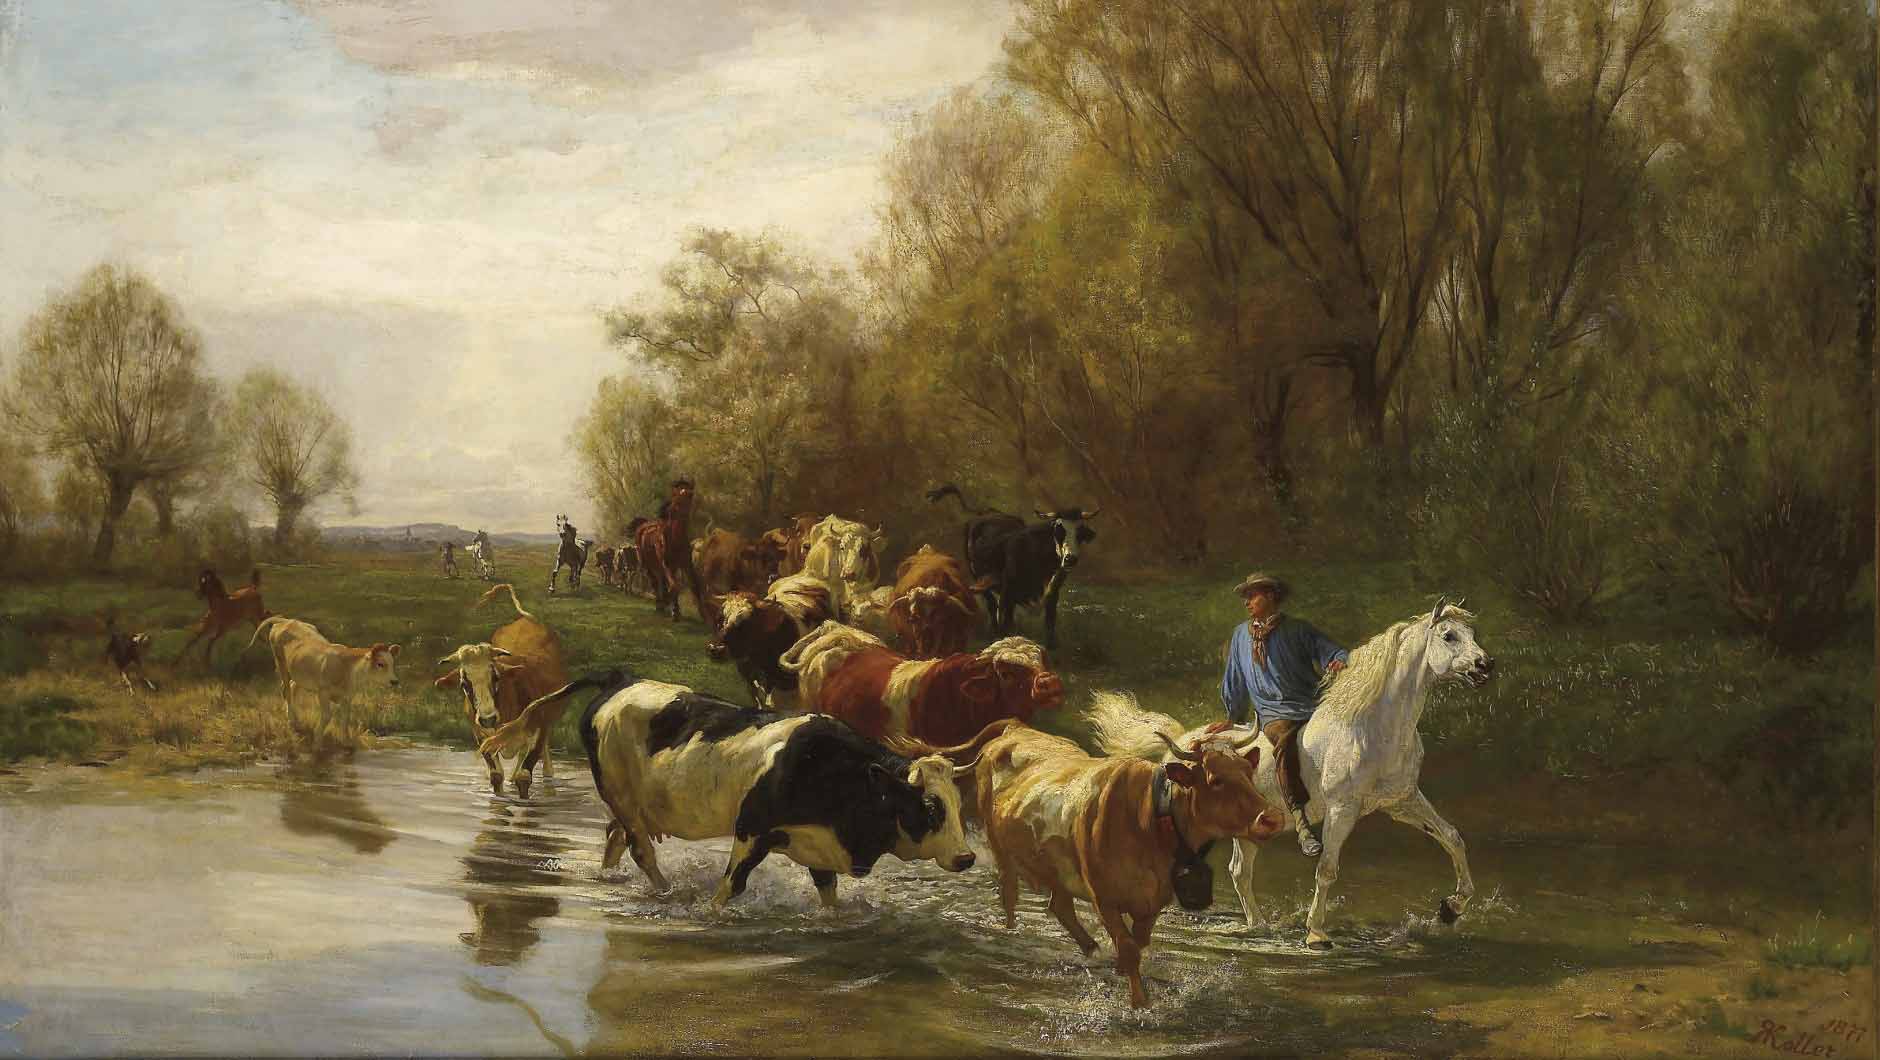 Kuhe mit Reiter am Wasser beim Zurichhorn